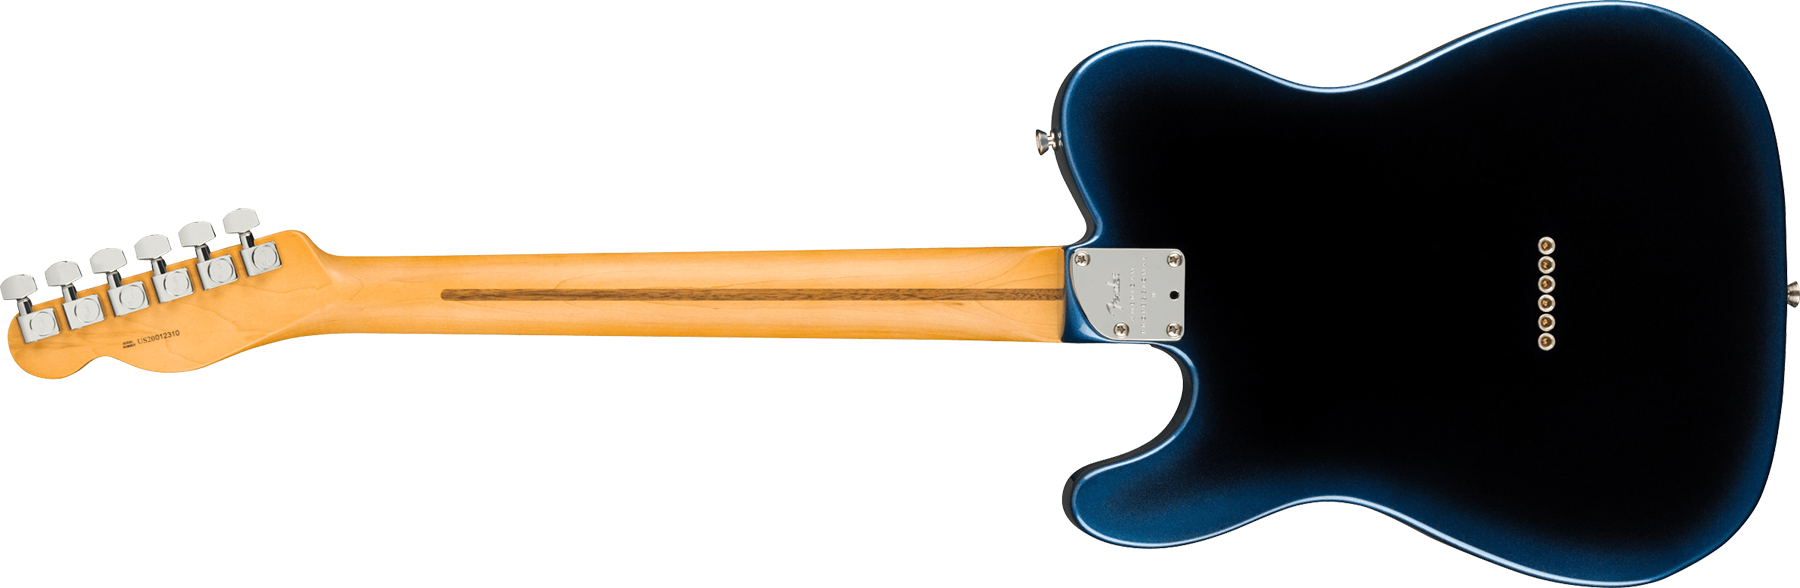 Fender Tele American Professional Ii Usa Rw - Dark Night - Guitarra eléctrica con forma de tel - Variation 1